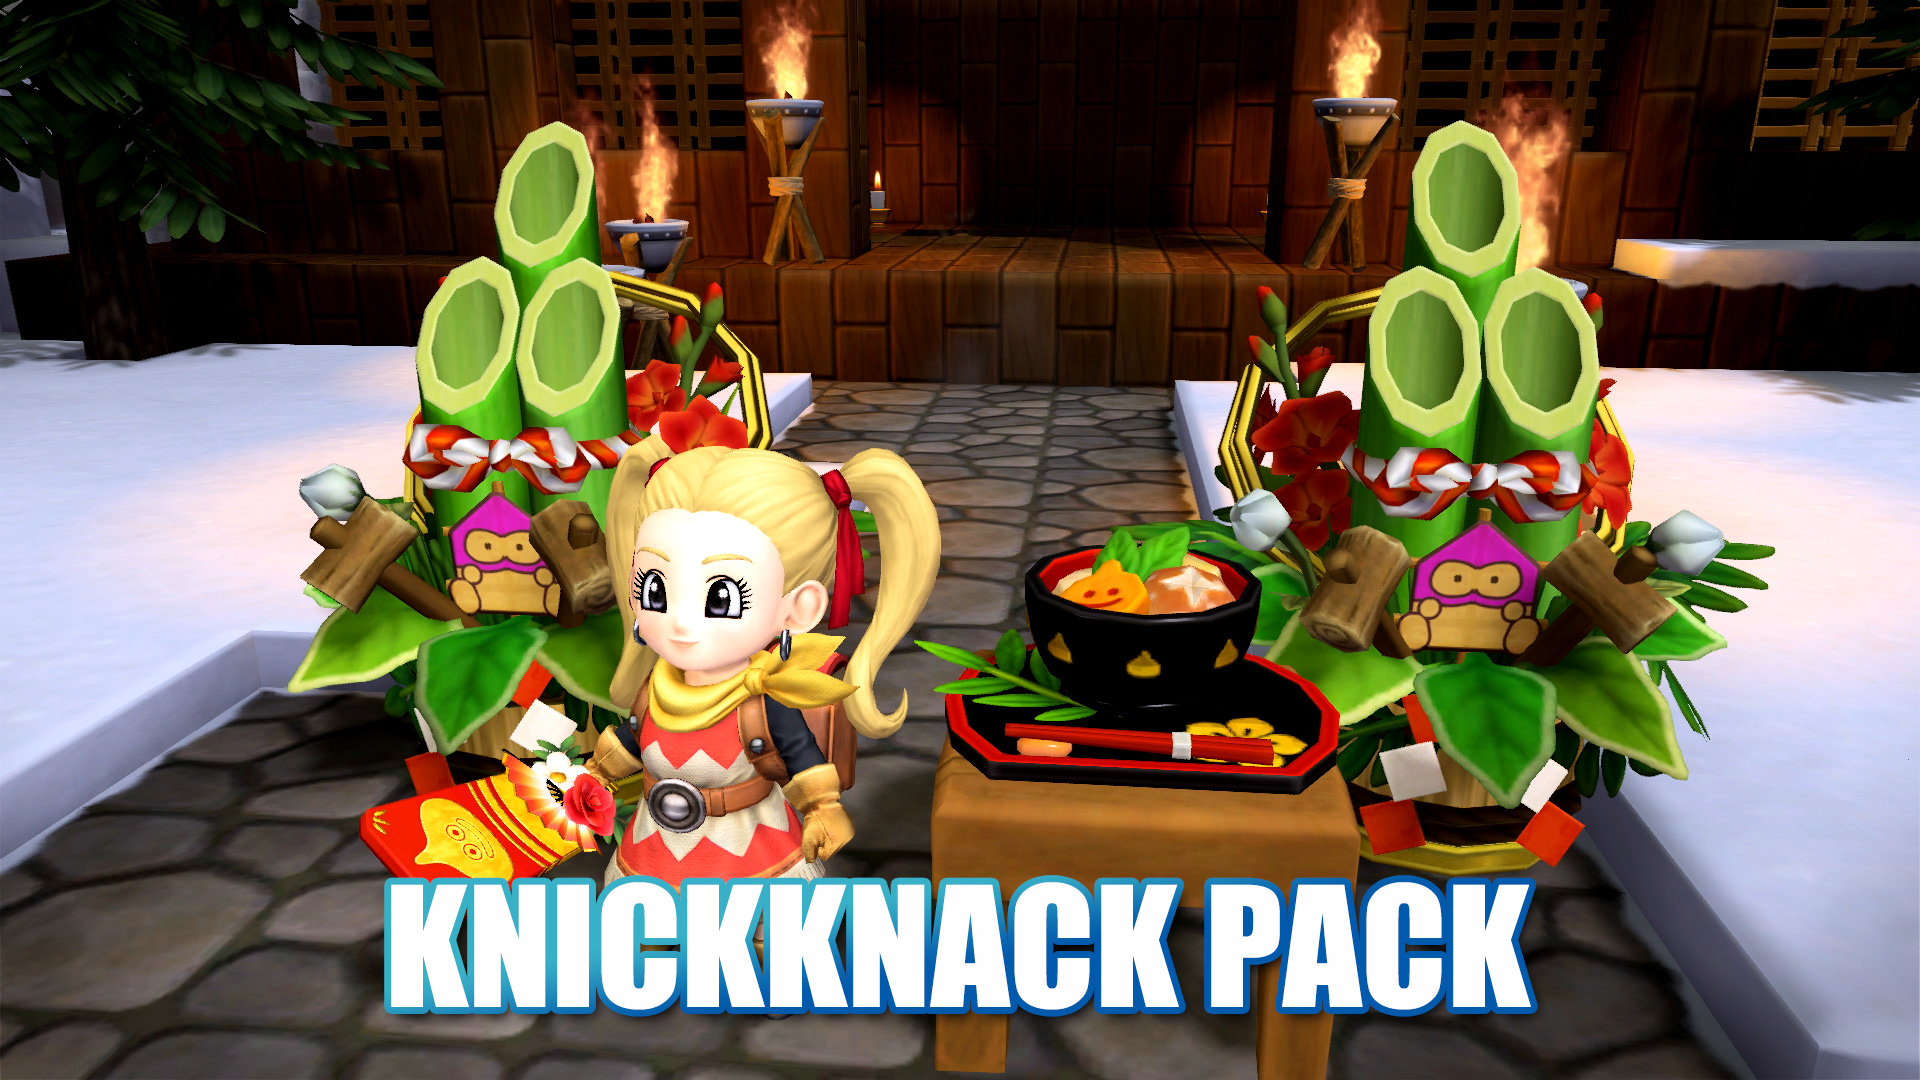 Knickknack Pack